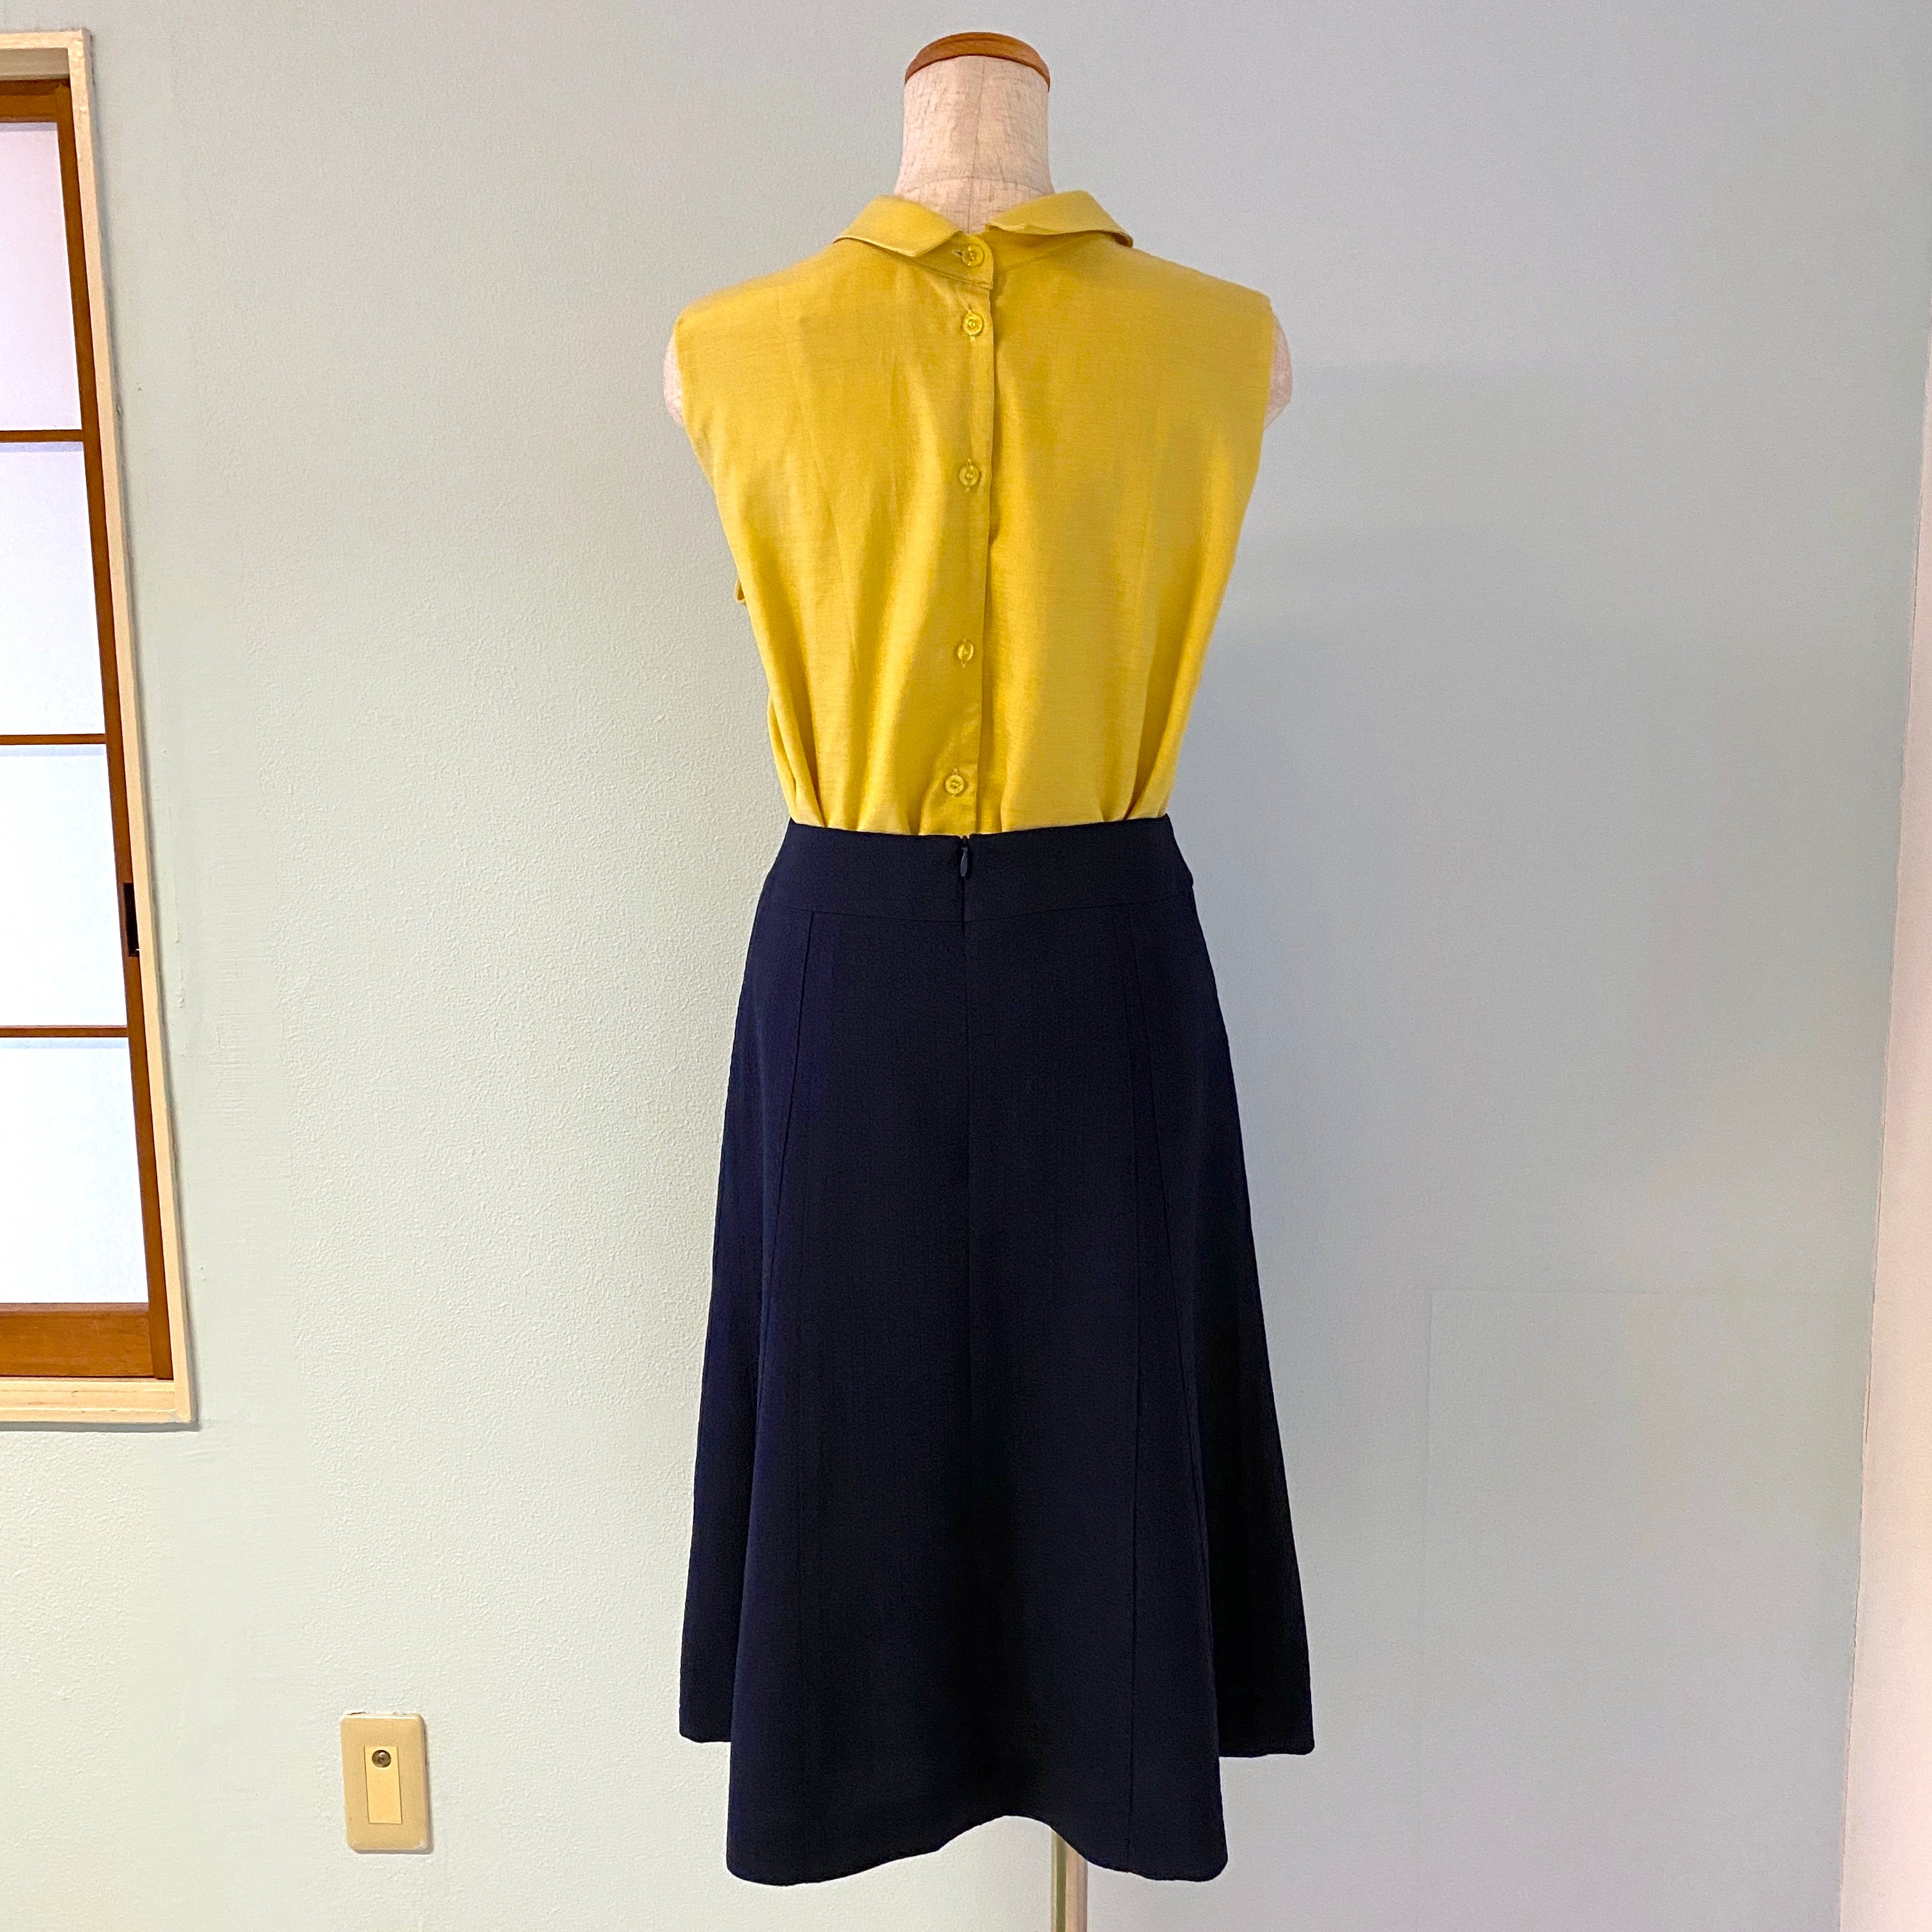 丸襟ノースリーブの黄色ブラウスとネイビーのシンプルなスカート